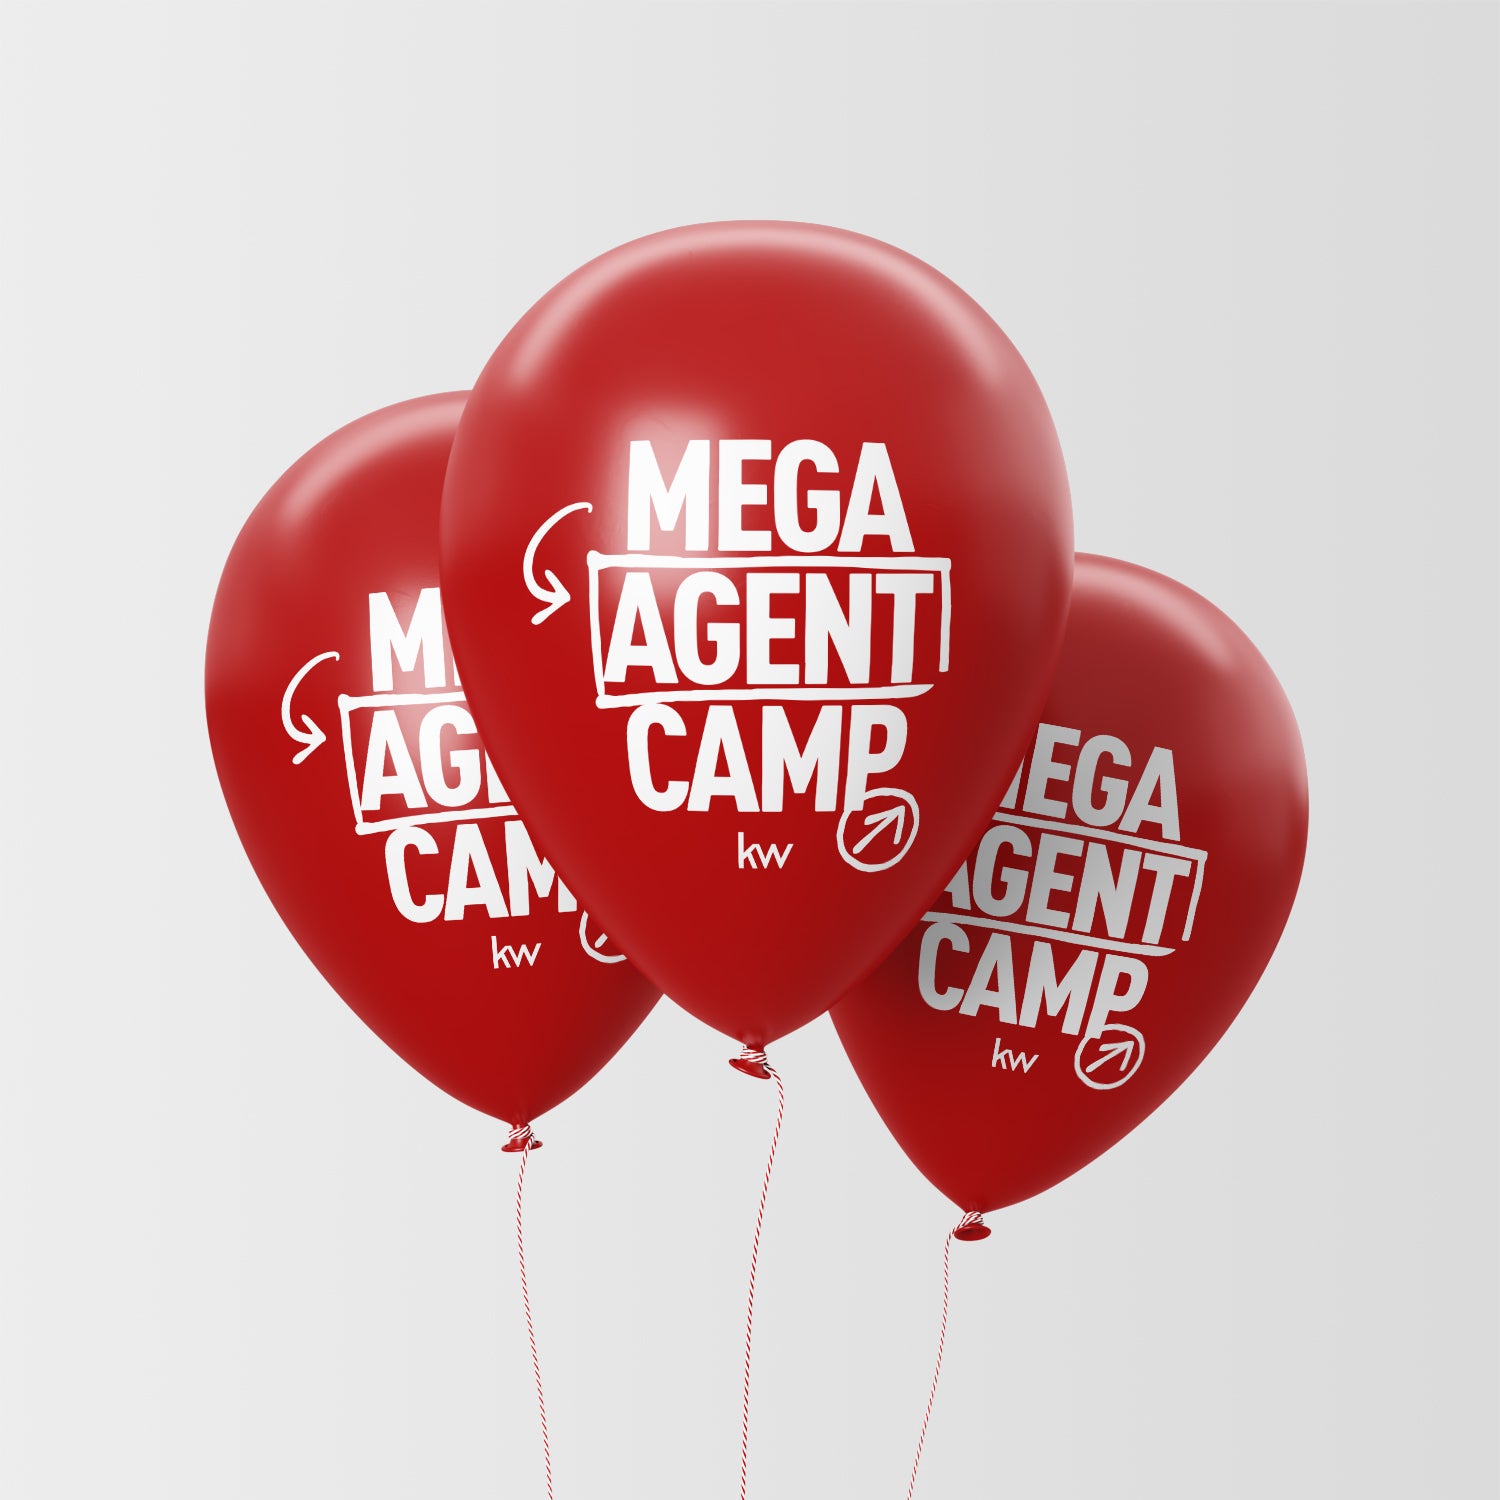 Ballons Mega Agent Camp pour les Markets Centers Store KW France